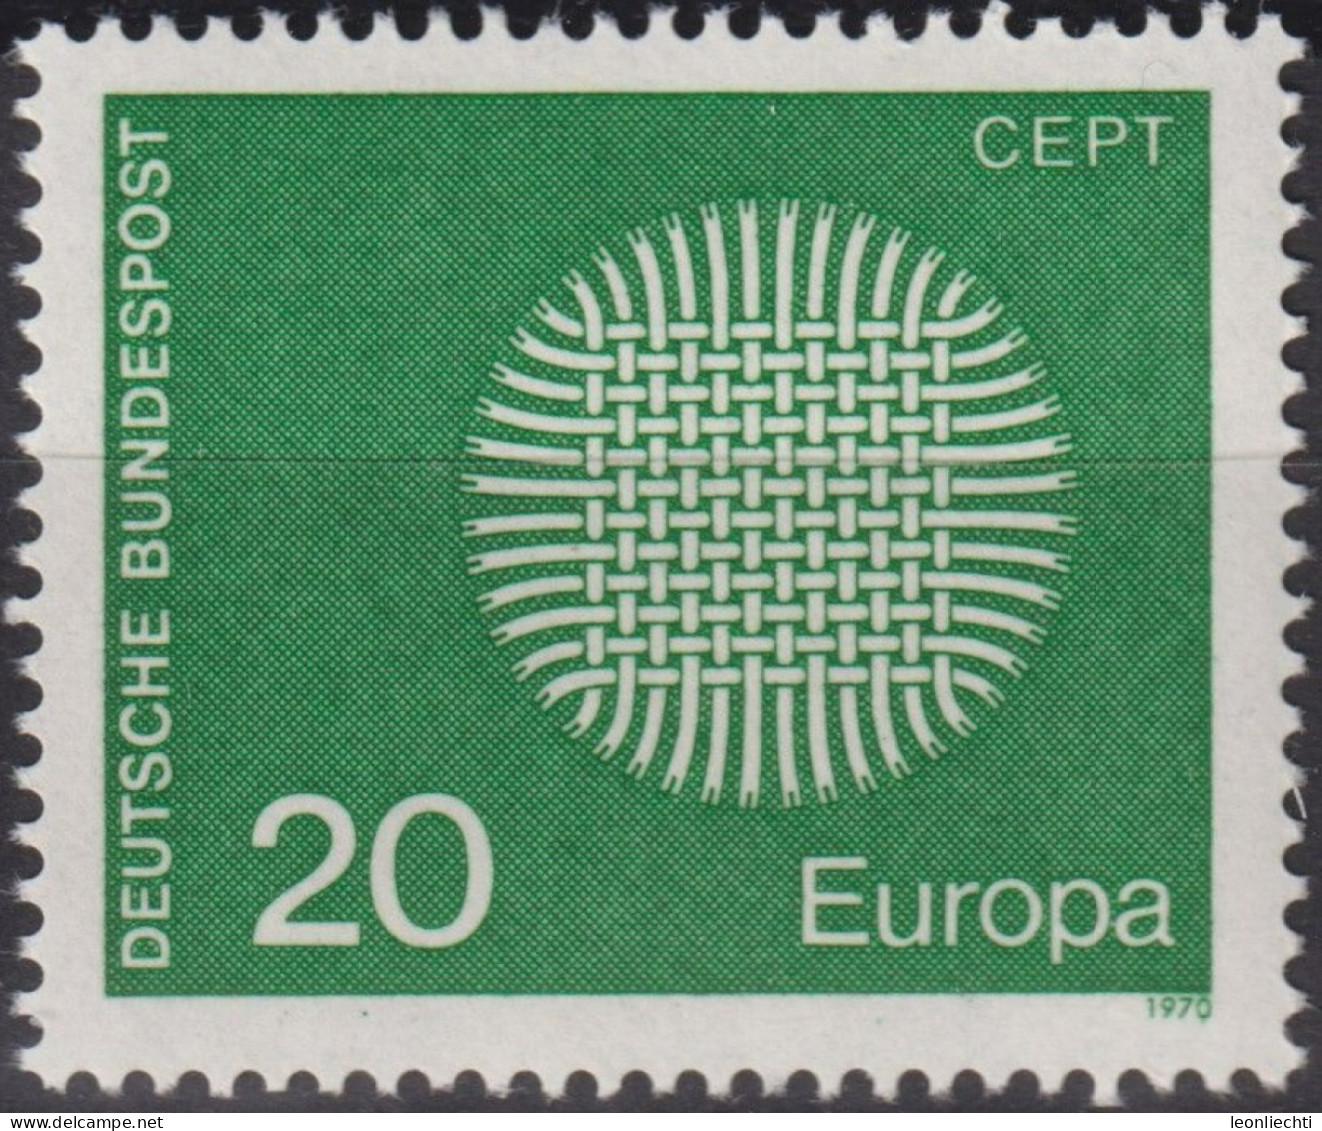 1970 BRD, ** Mi:DE 620, Sn:DE 1018, Yt:DE 483, Europa (C.E.P.T.) 1970 - Lodernde Sonne - 1970